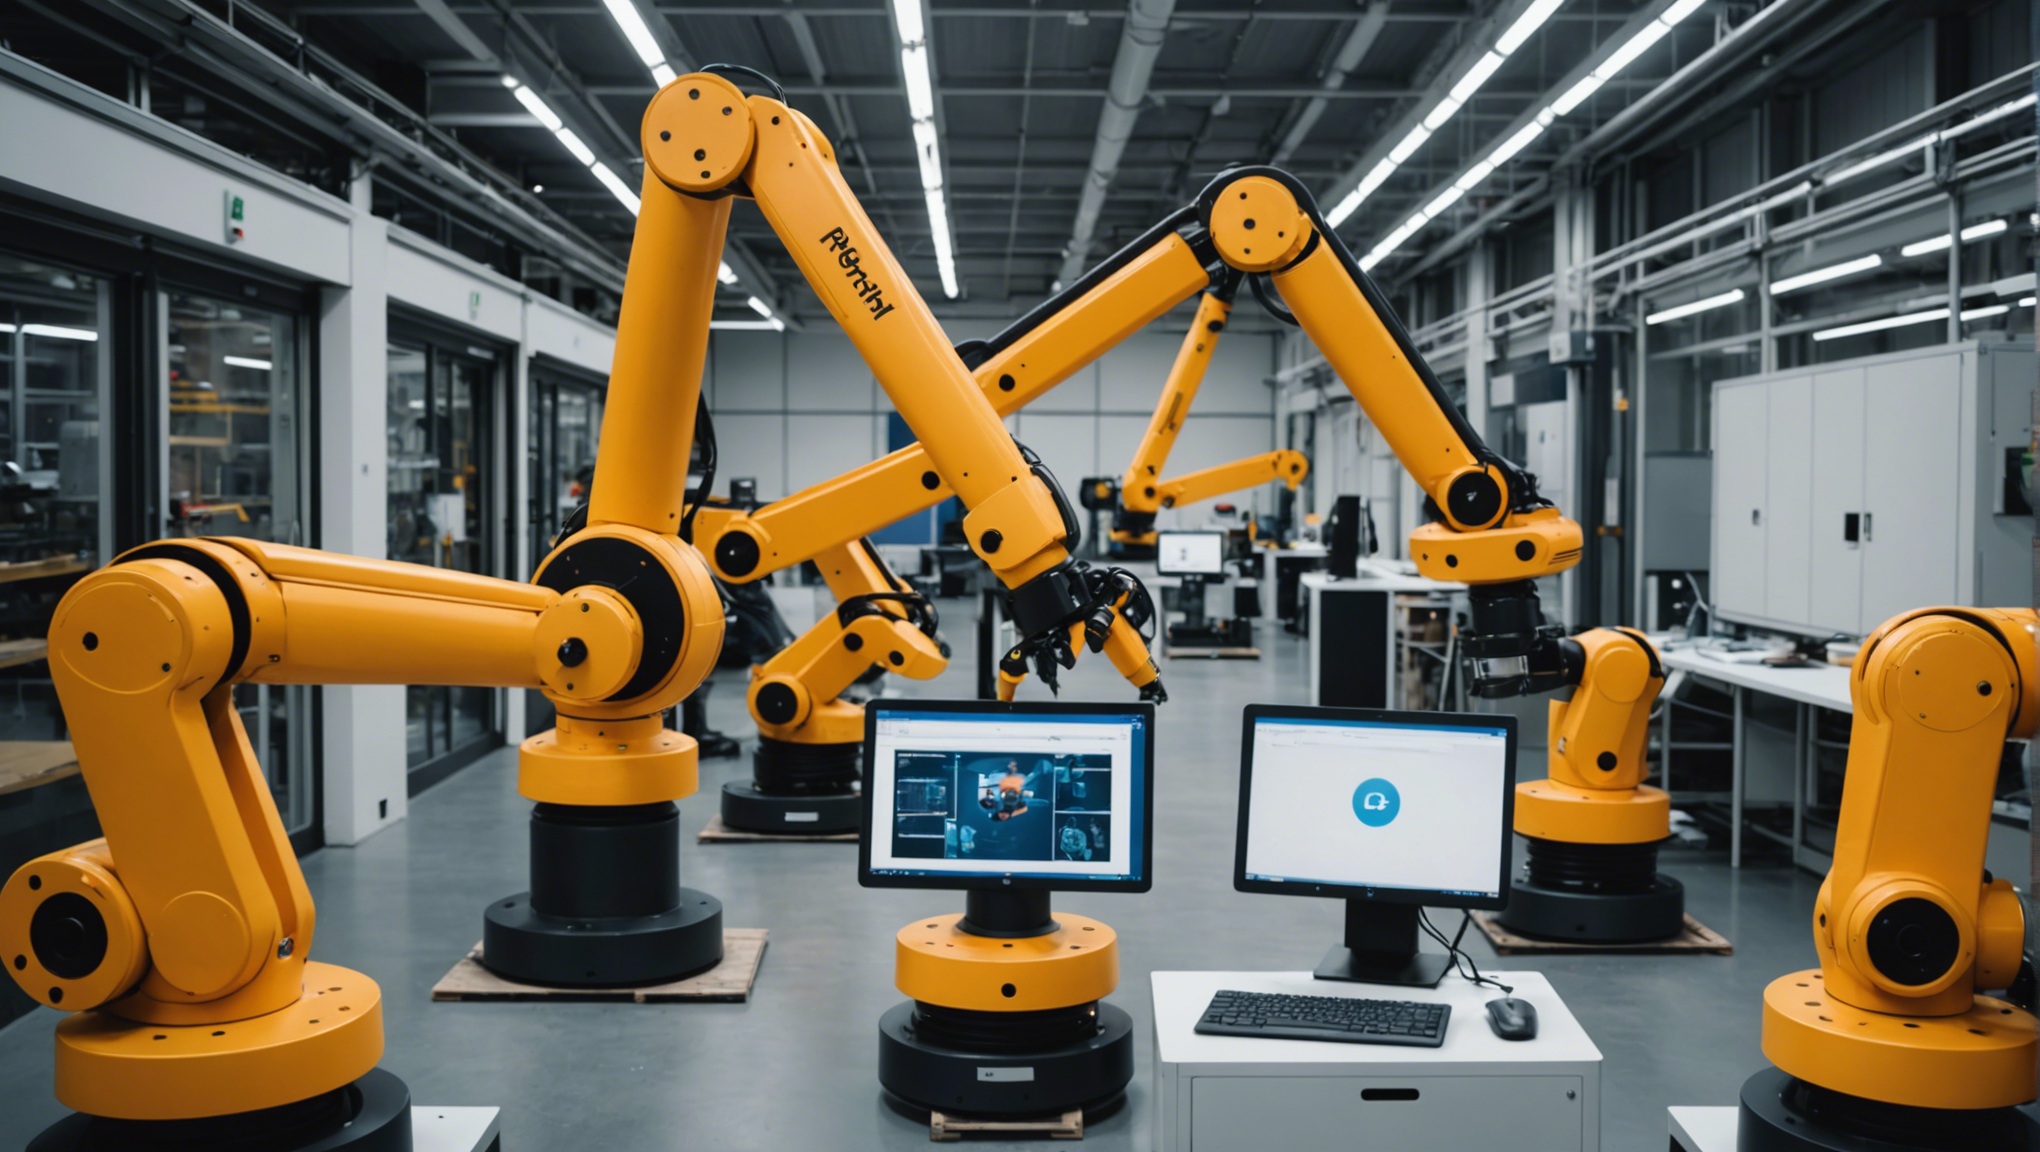 découvrez comment l'intégration des robots collaboratifs révolutionne l'industrie. les enjeux, les opportunités et les défis de cette nouvelle ère de la robotique industrielle.